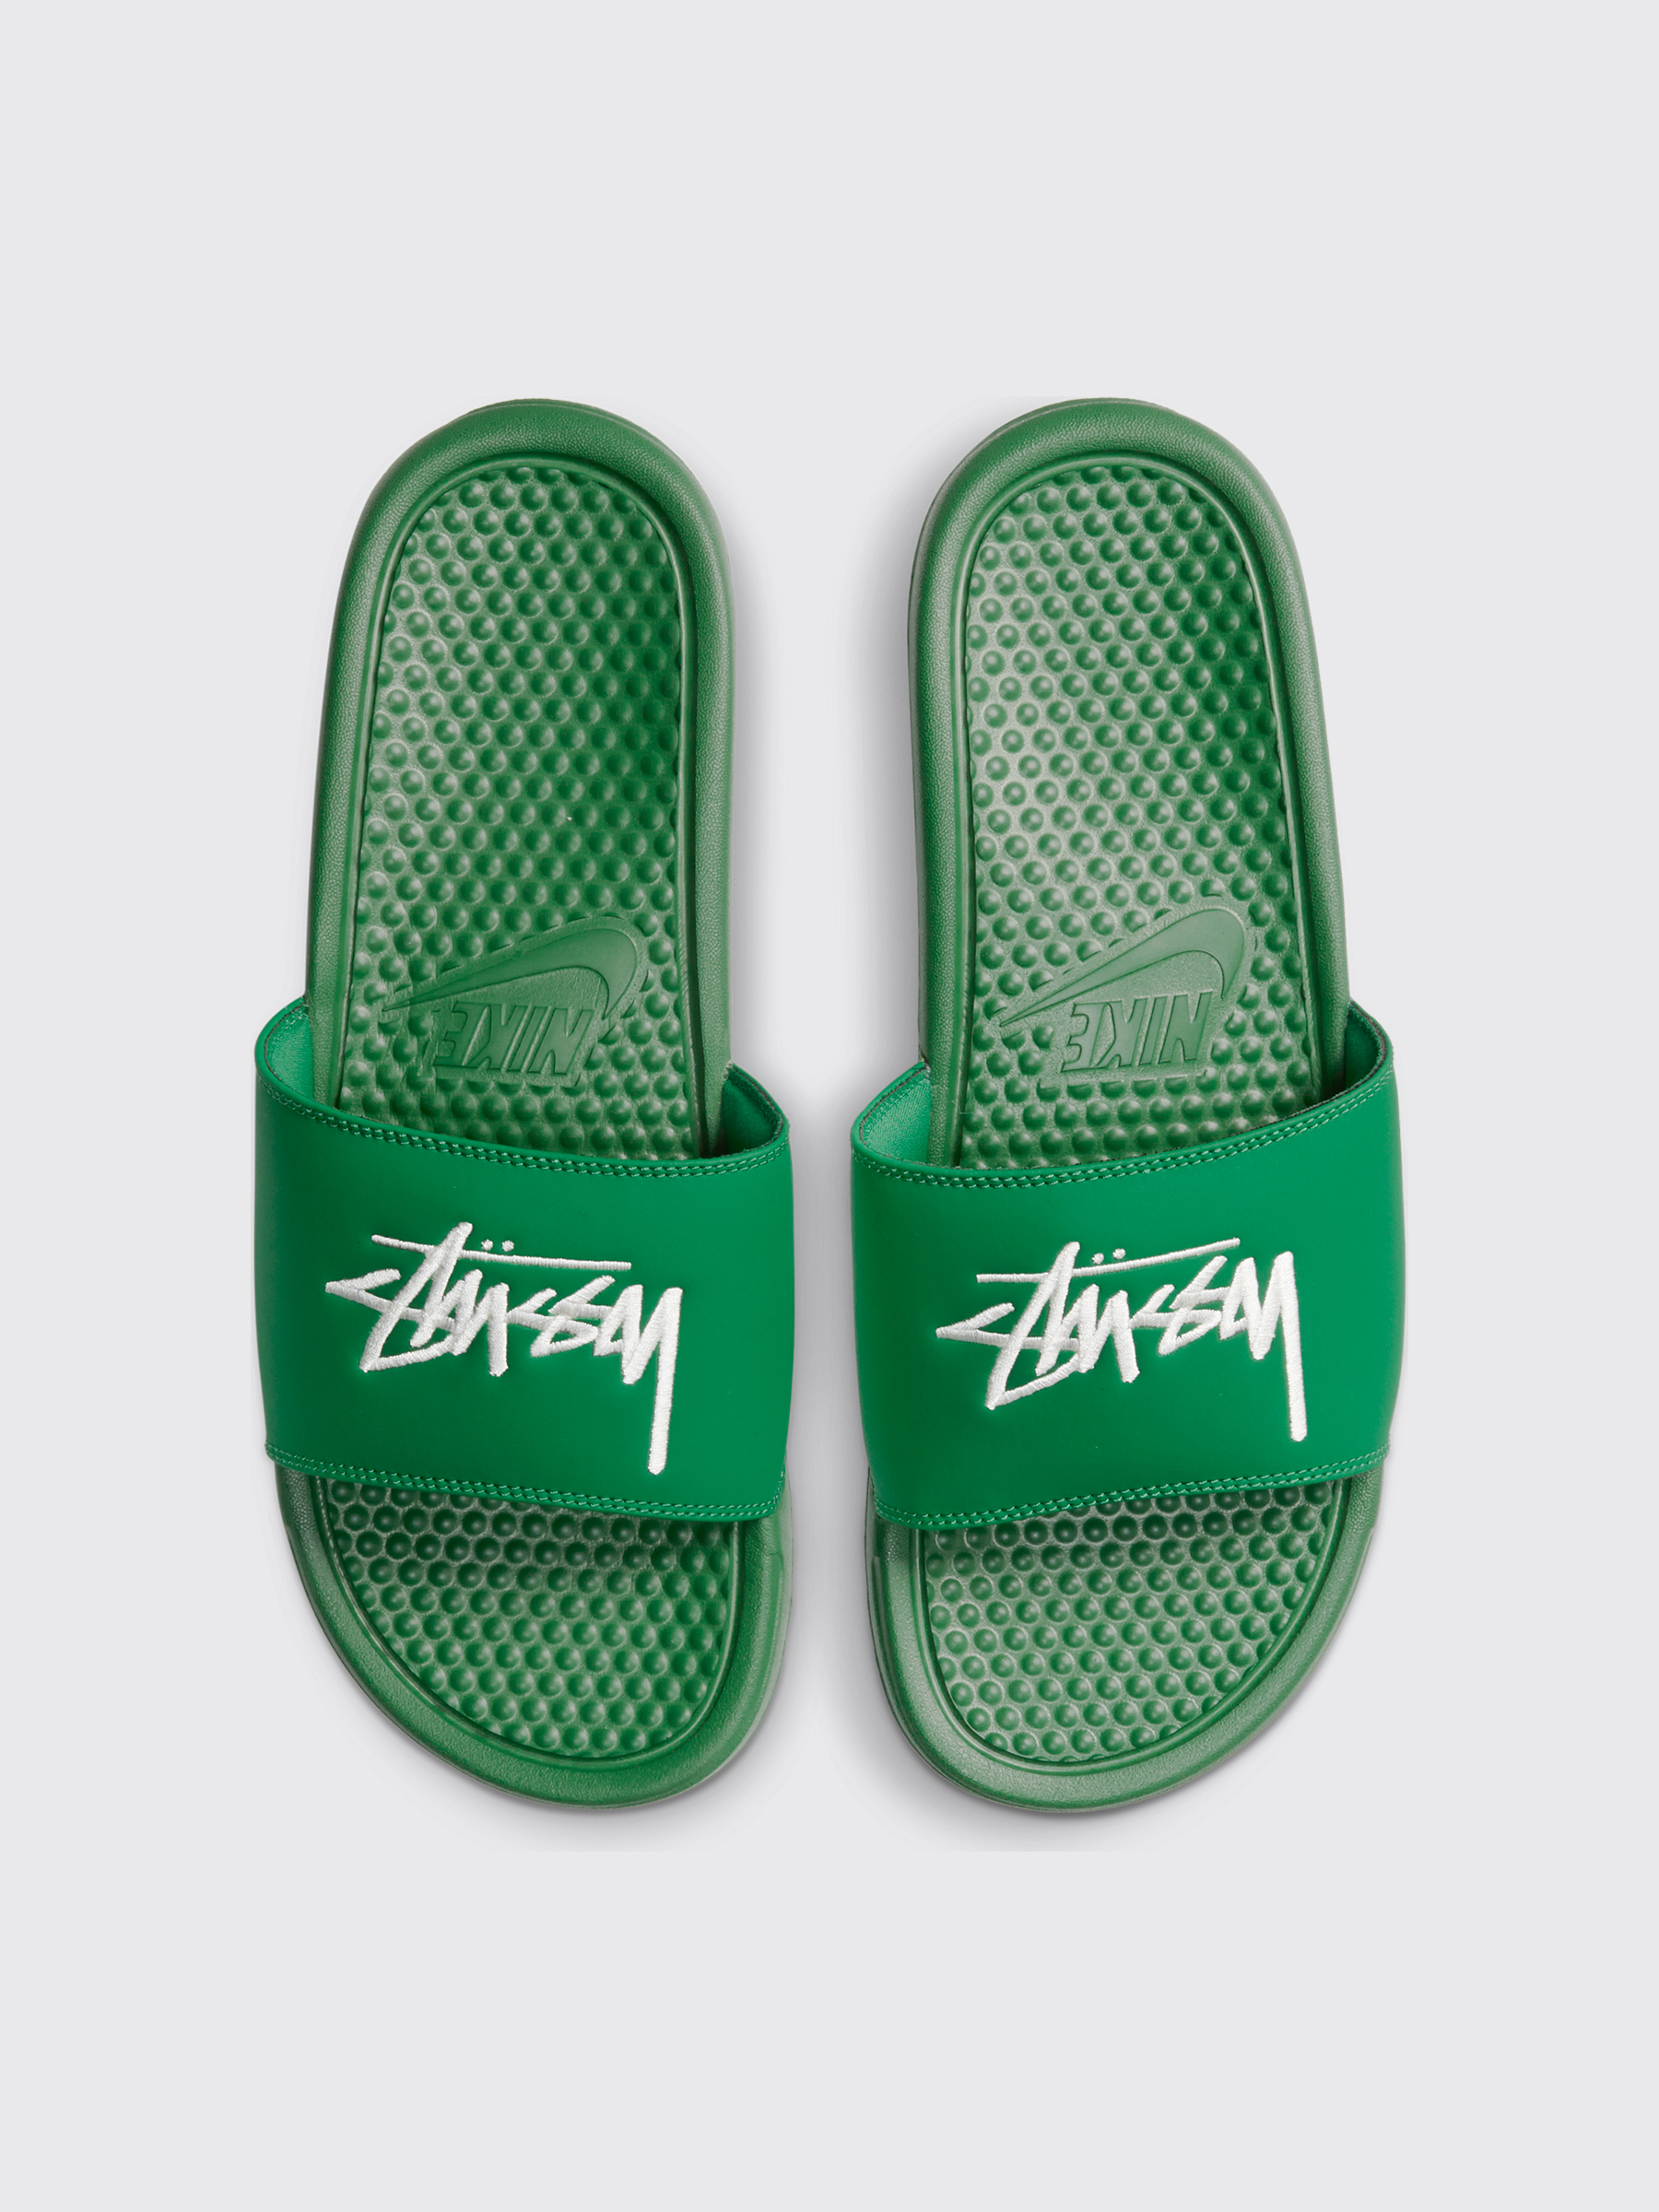 nike green slippers